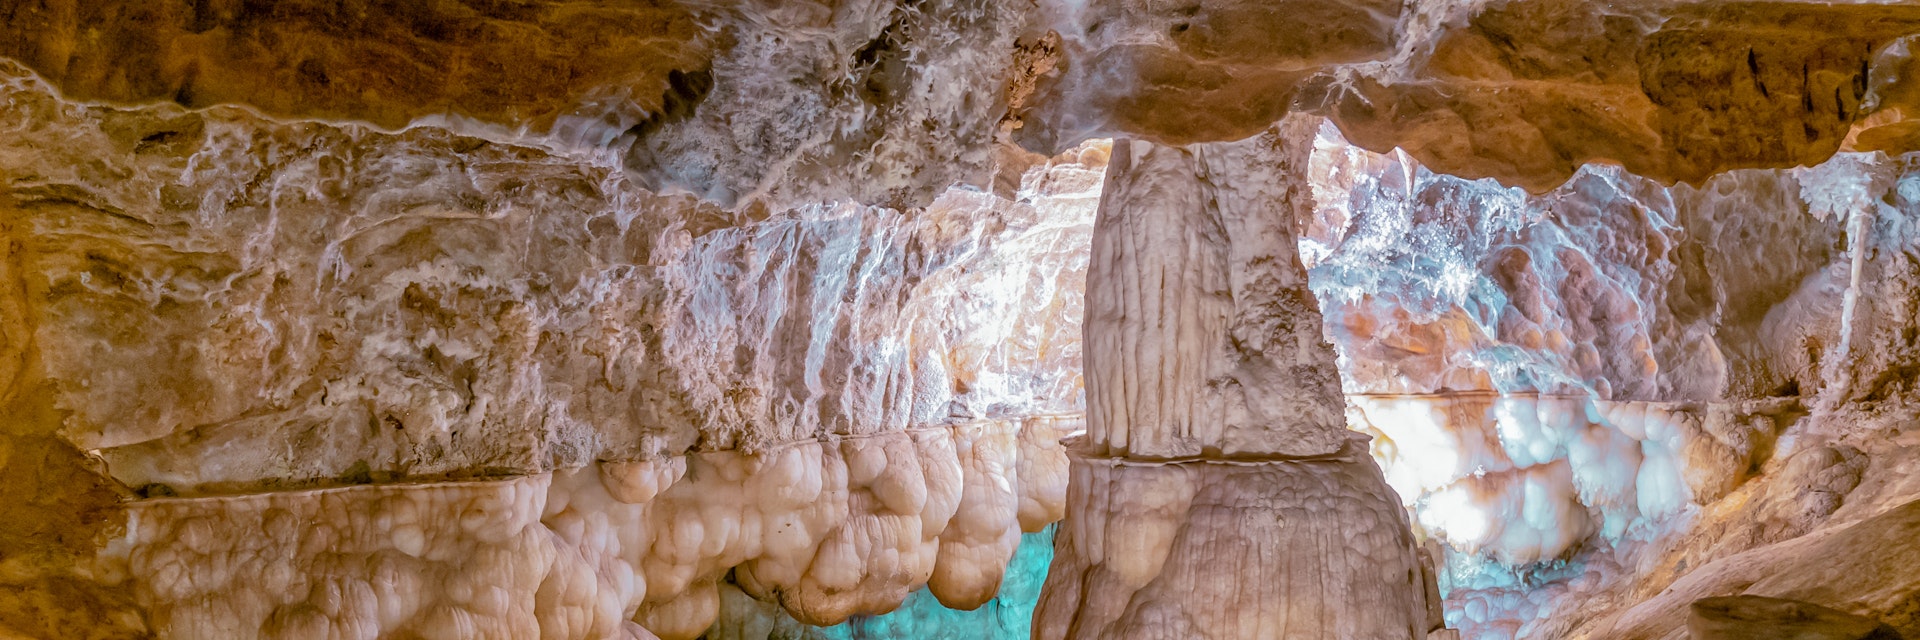 The Gruta de las Maravillas cave in Aracena.